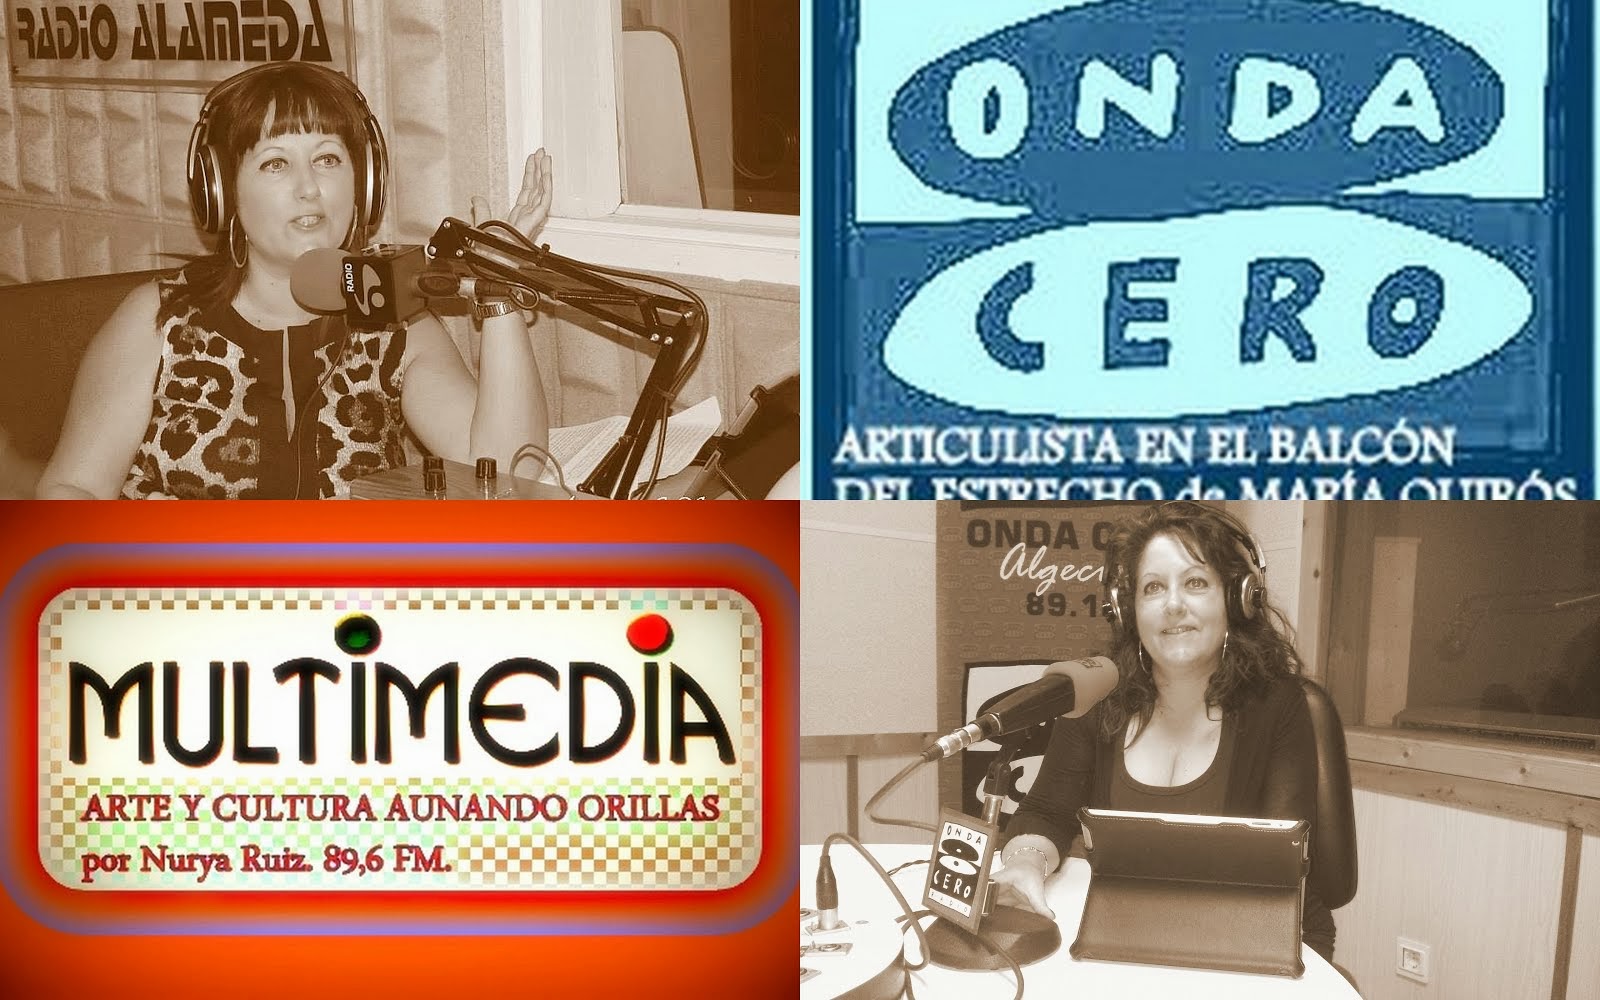 Programa de radio Multimedia y colaboración en otras emisoras como Onda Cero Algeciras.